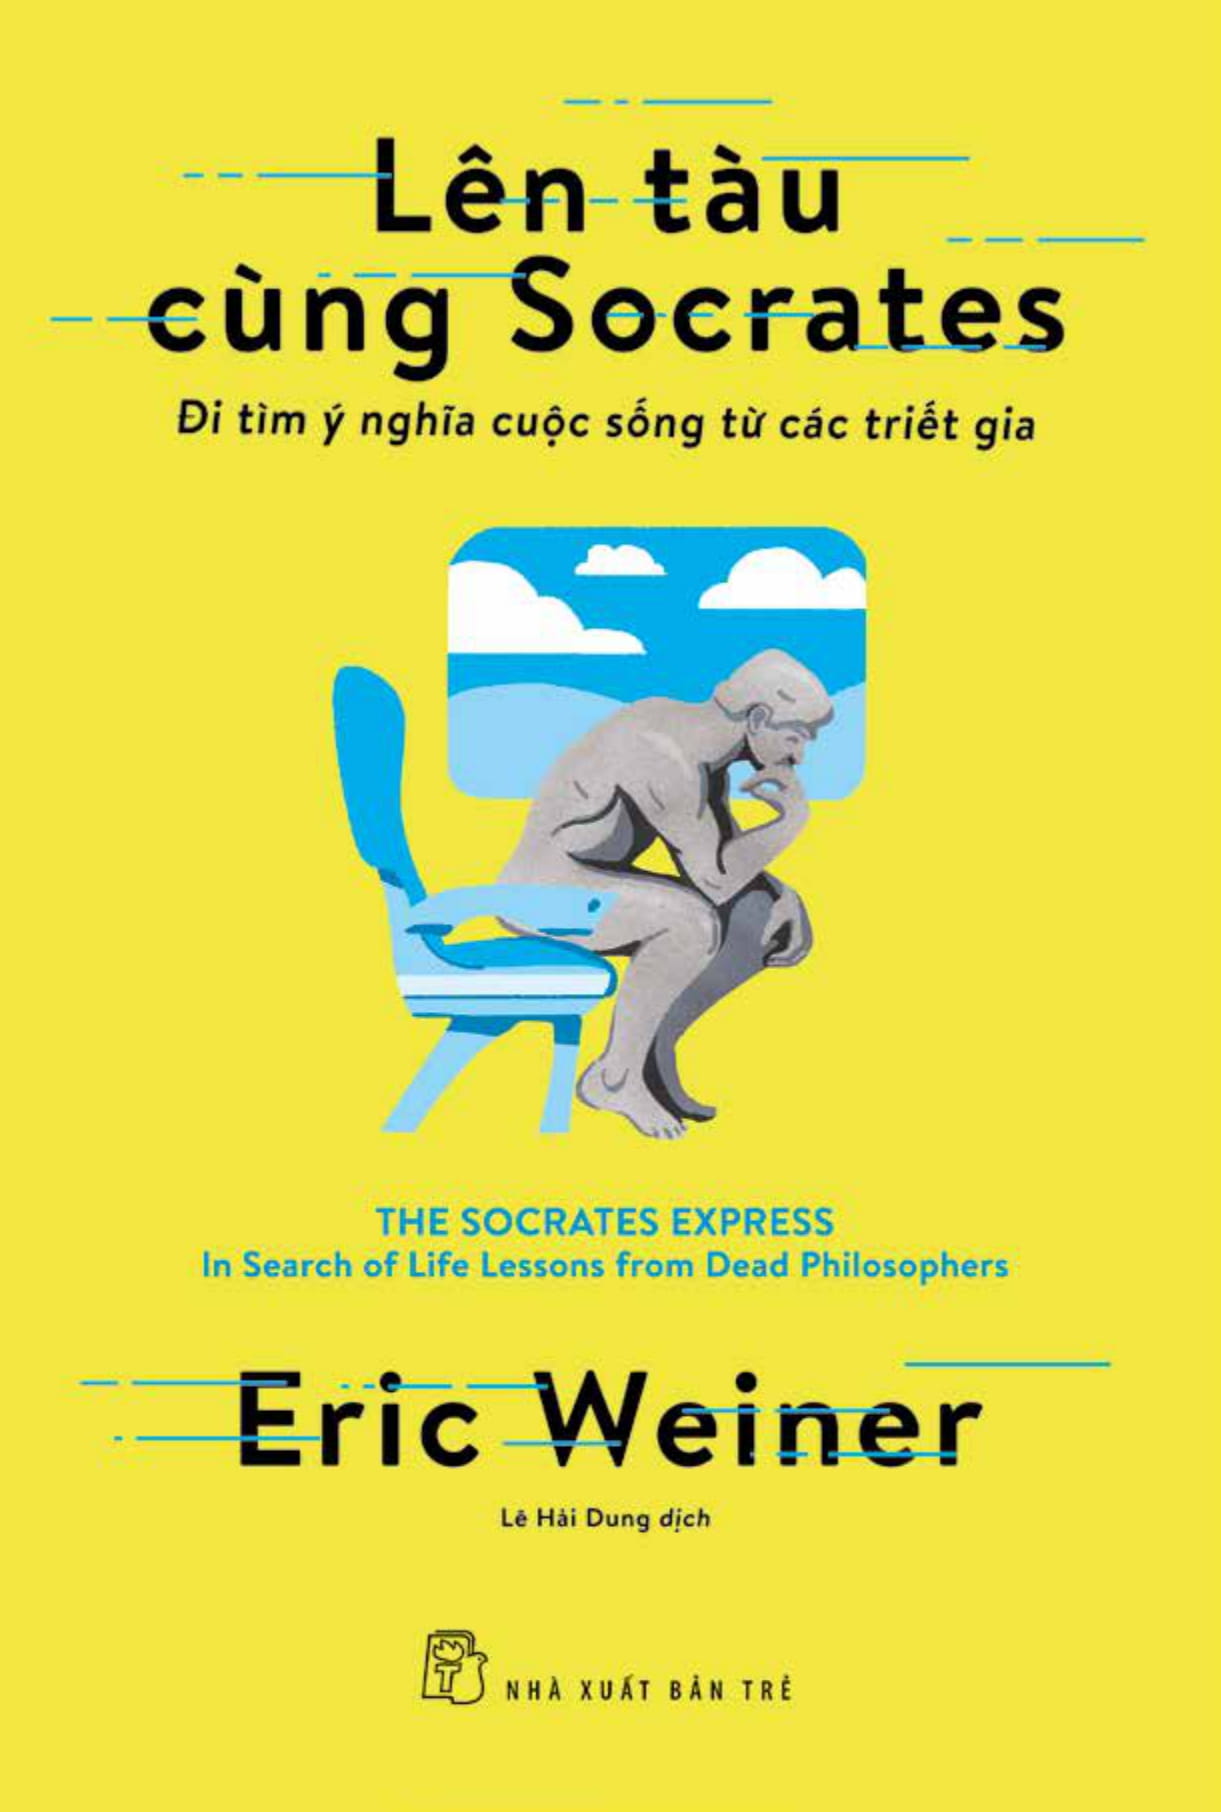 Lên Tàu Cùng Socrates: Đi Tìm Ý Nghĩa Cuộc Sống Từ Các Triết Gia PDF